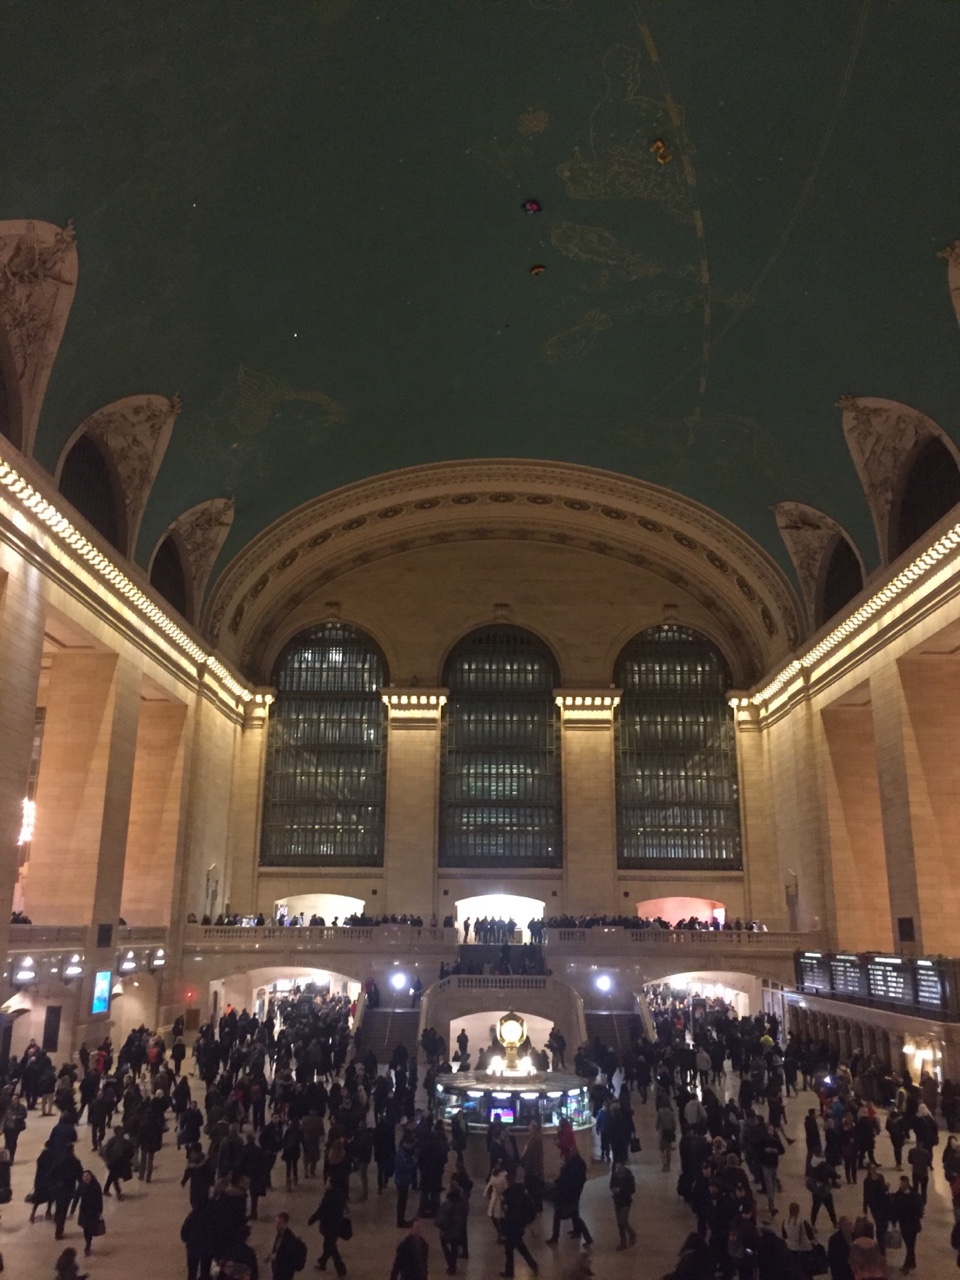 53대 학생회 호연지기 <영화 속 건축> 그랜드 센트럴 터미널(Grand Central Terminal) 2번째 파일 - 자세한 내용은 본문 참조